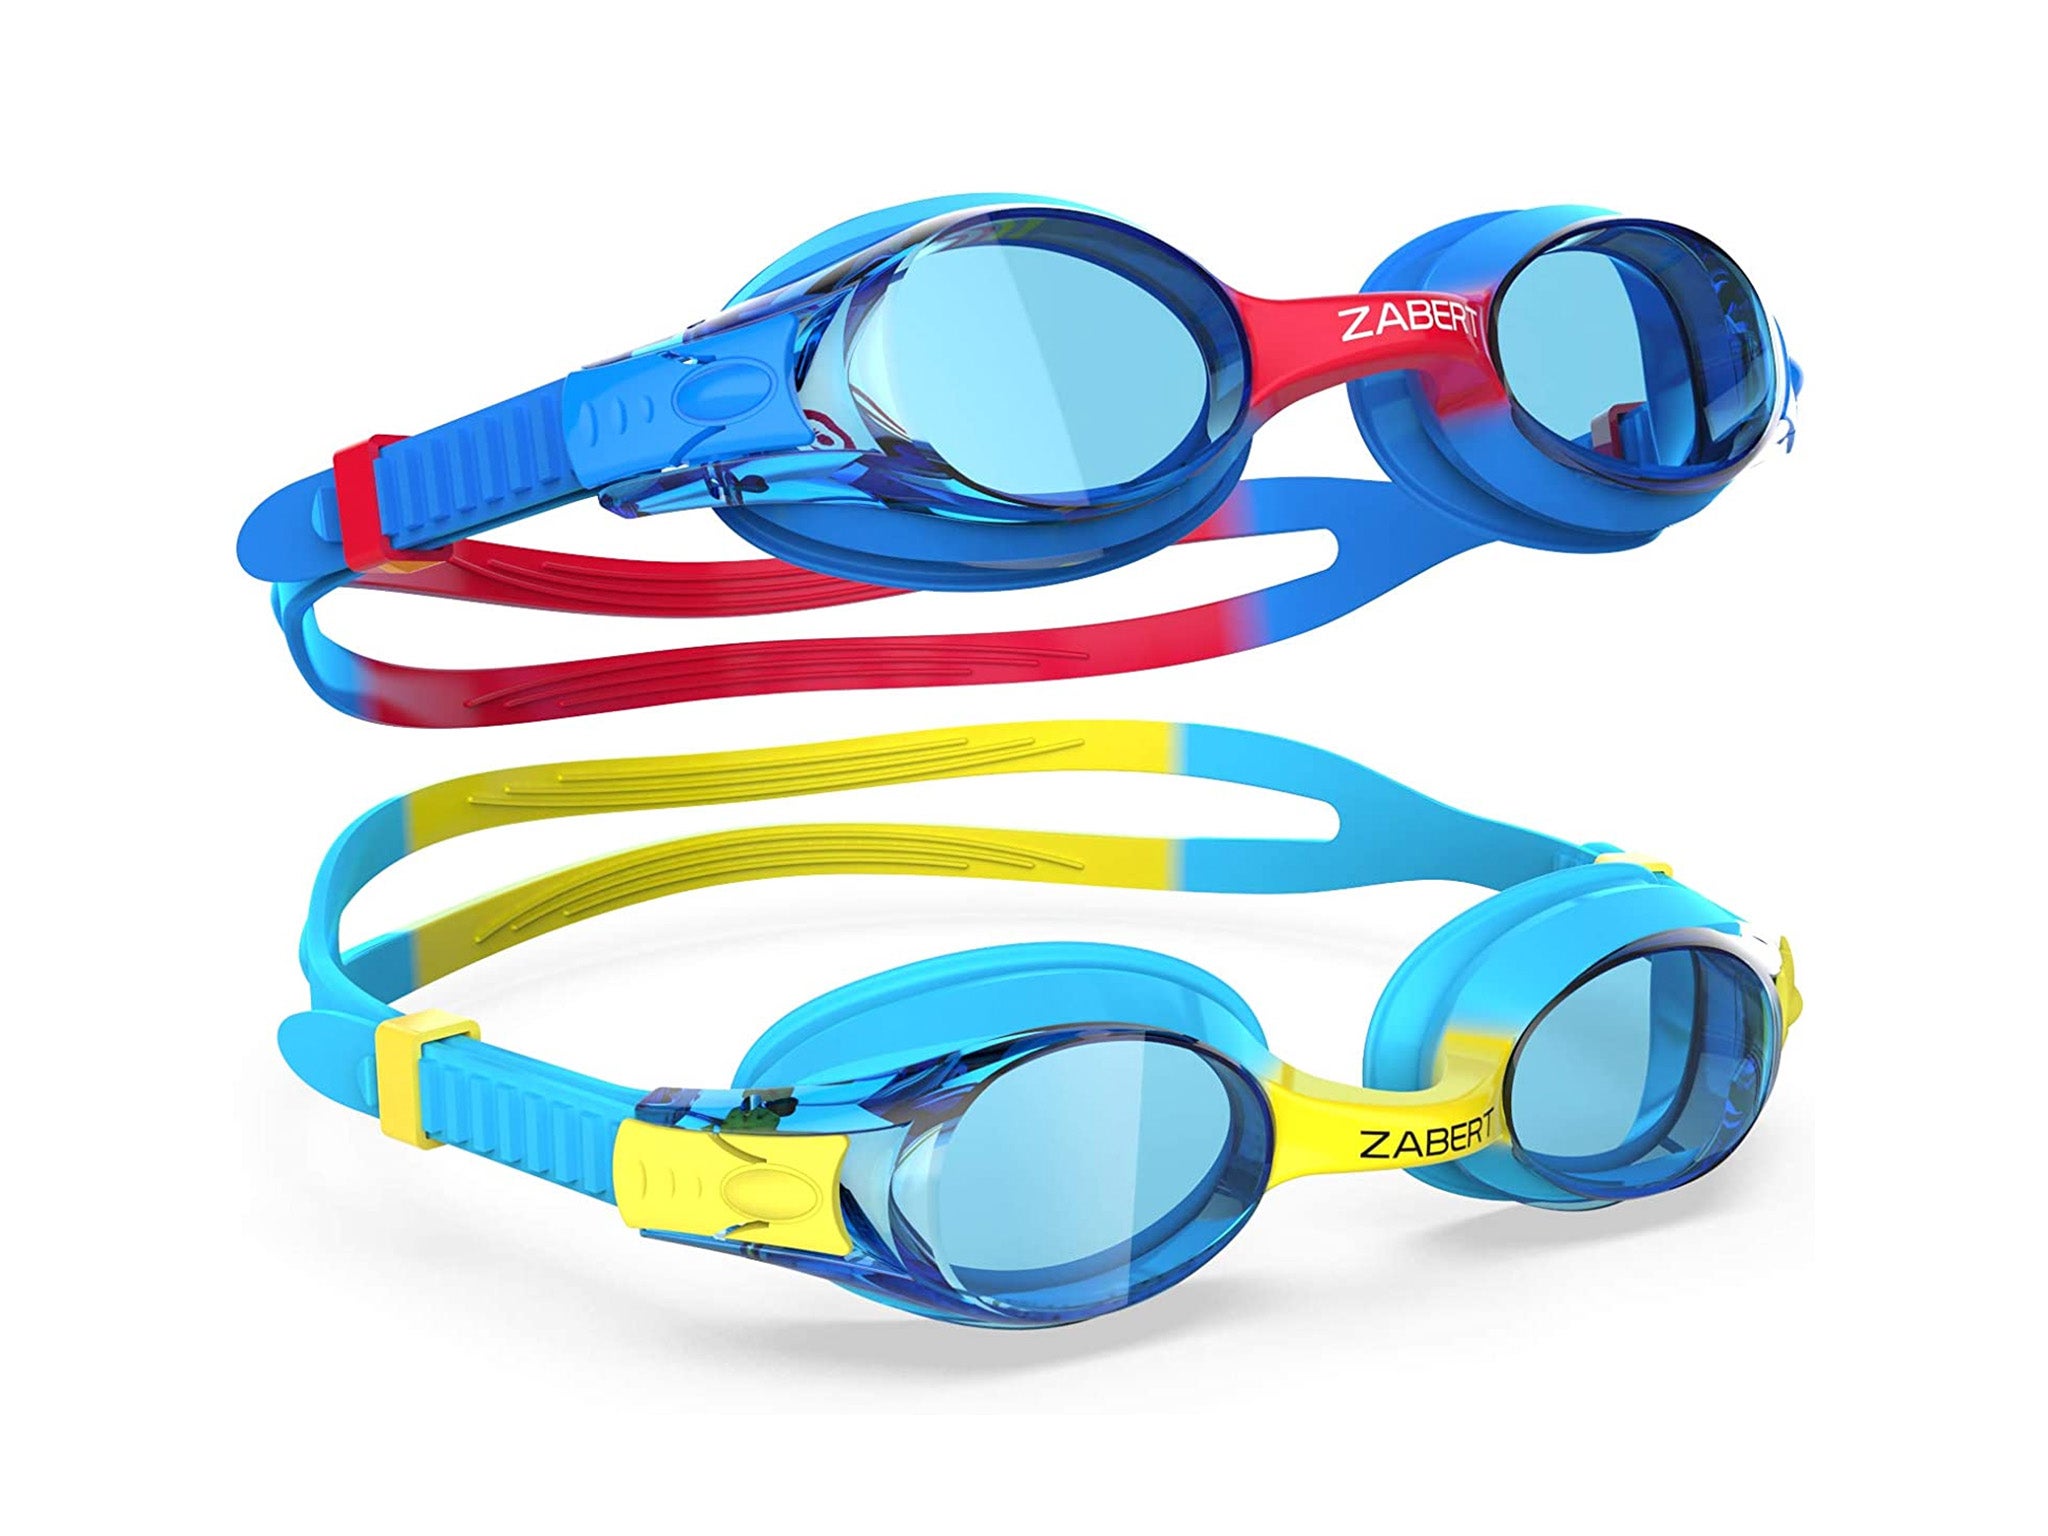 Zabert K20 kids swimming goggles